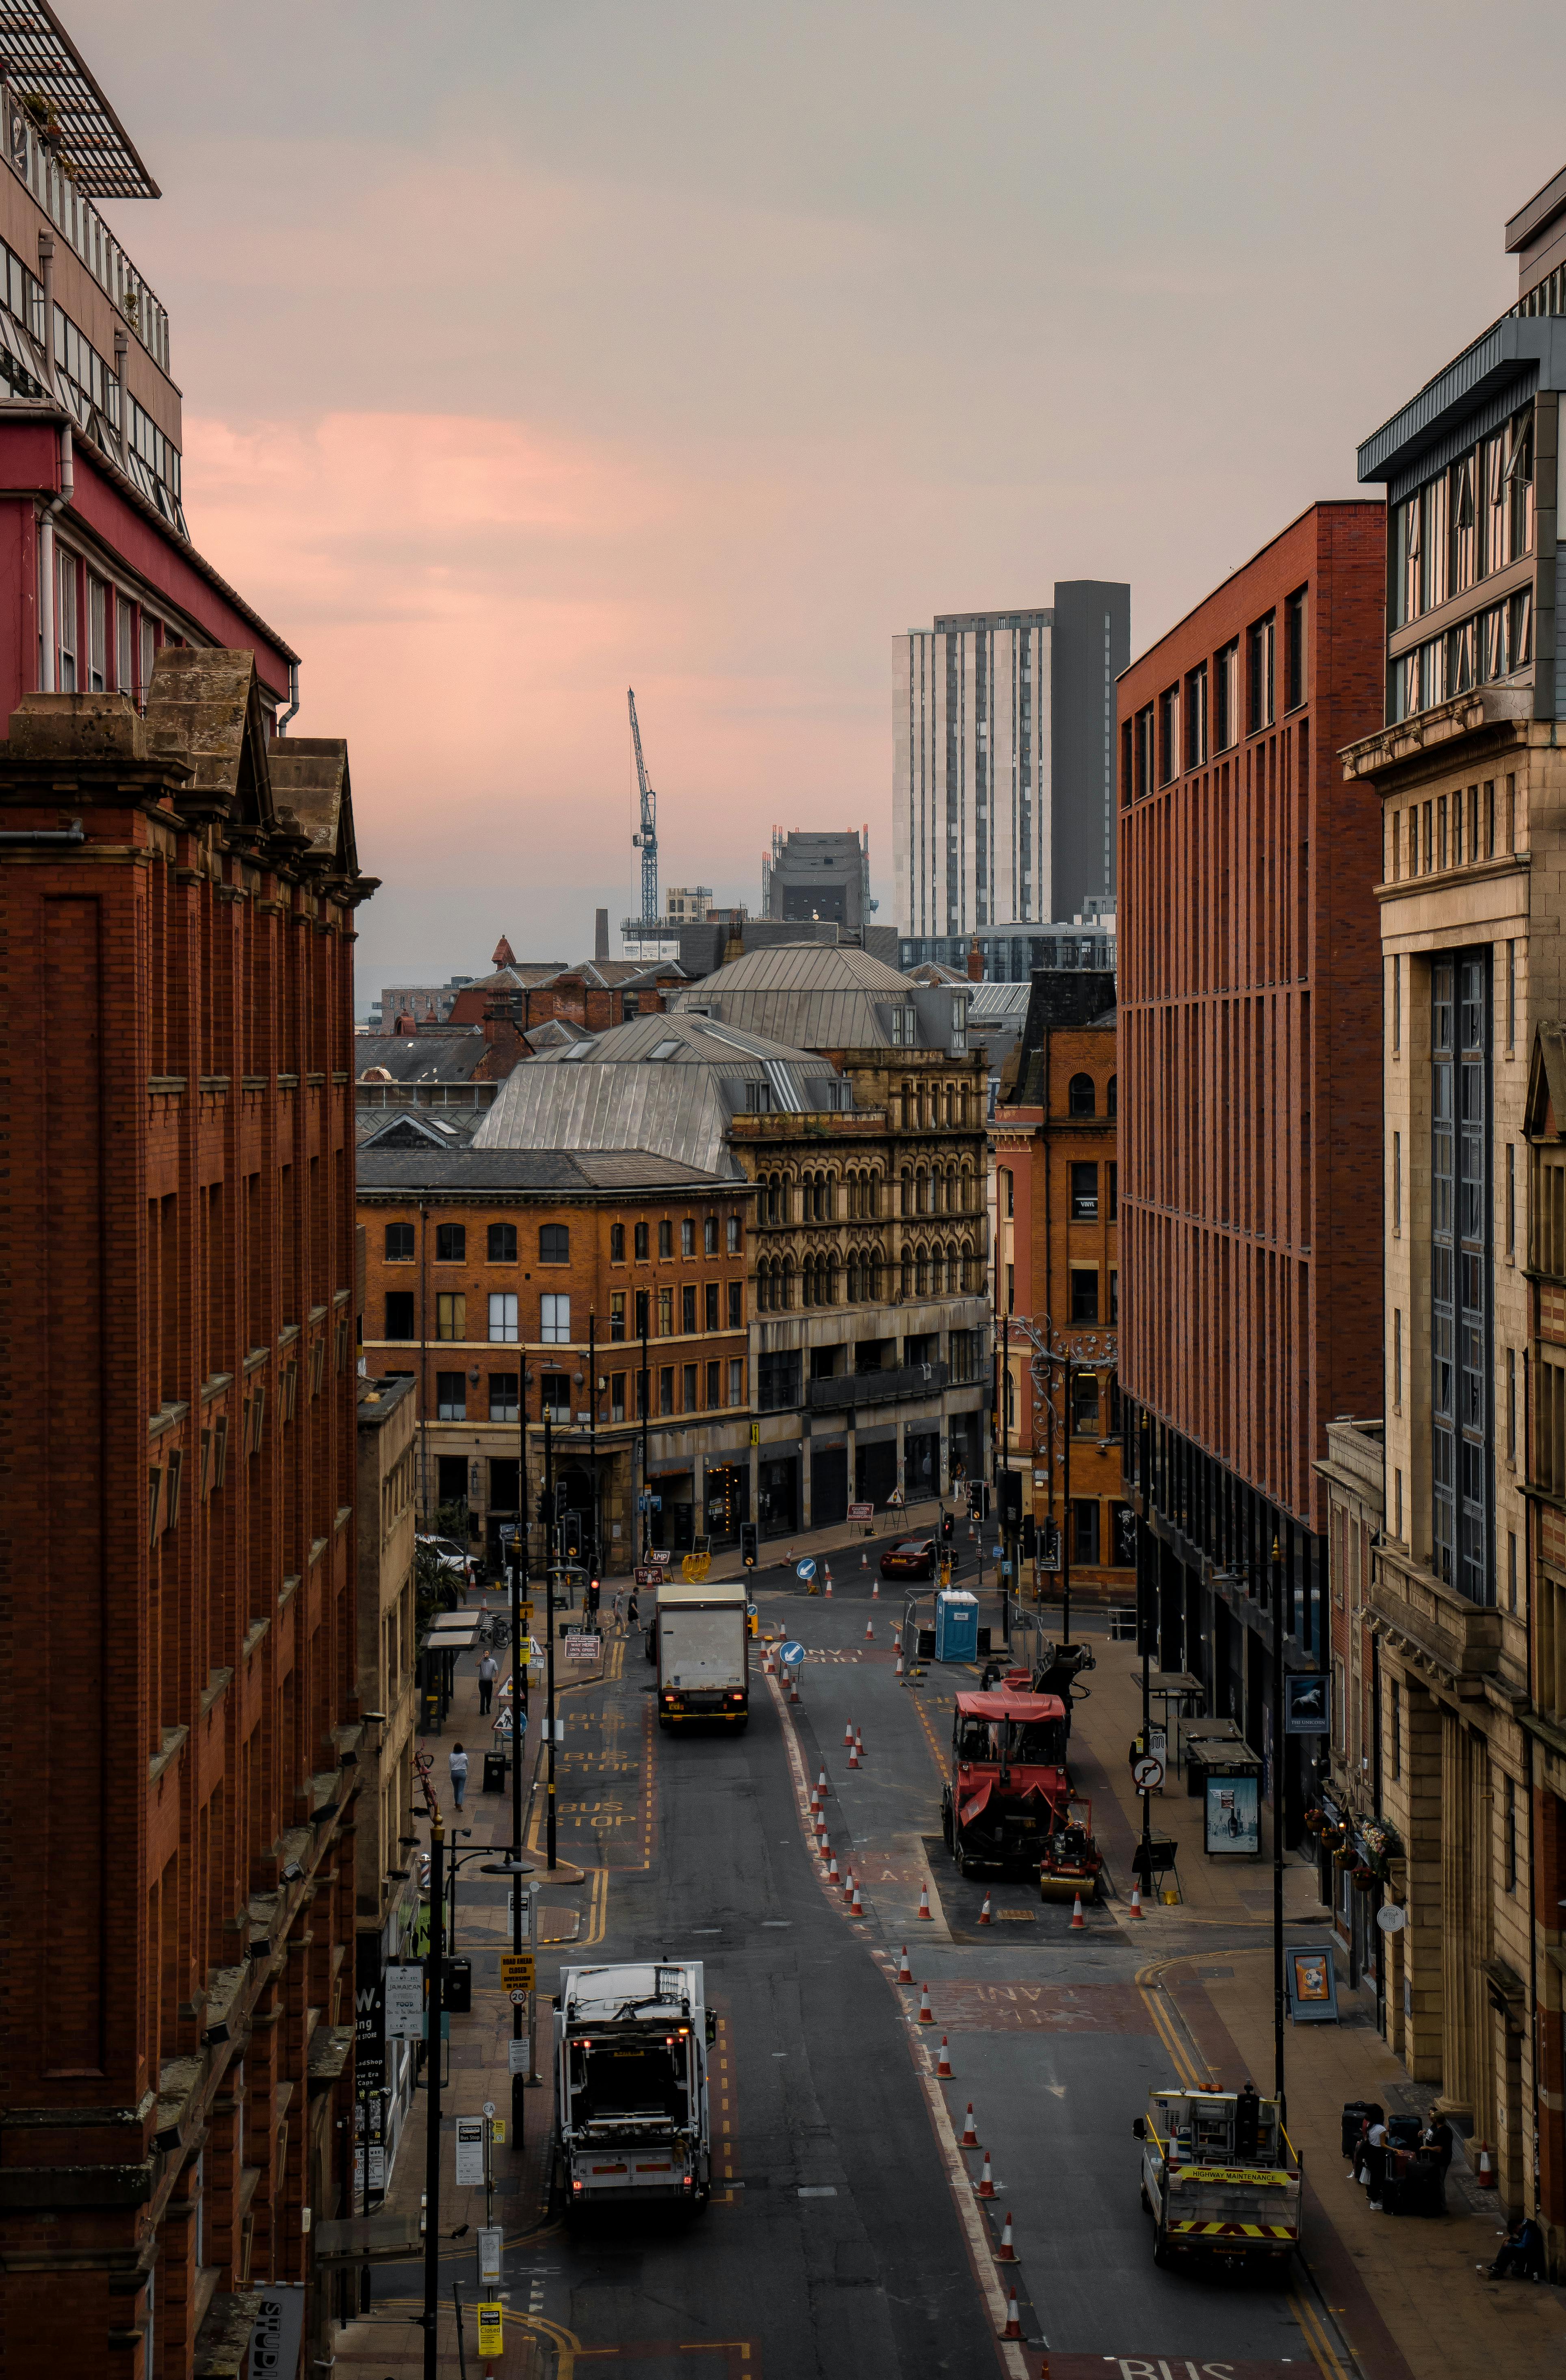 Thành Phố Manchester: Khám phá thành phố Manchester - một địa điểm tuyệt vời cho những ai yêu thích phong cảnh đẹp và đầy sức sống. Từ các công trình kiến trúc đến những khu mua sắm và ẩm thực, Manchester sẽ mang đến cho bạn trải nghiệm đáng nhớ.